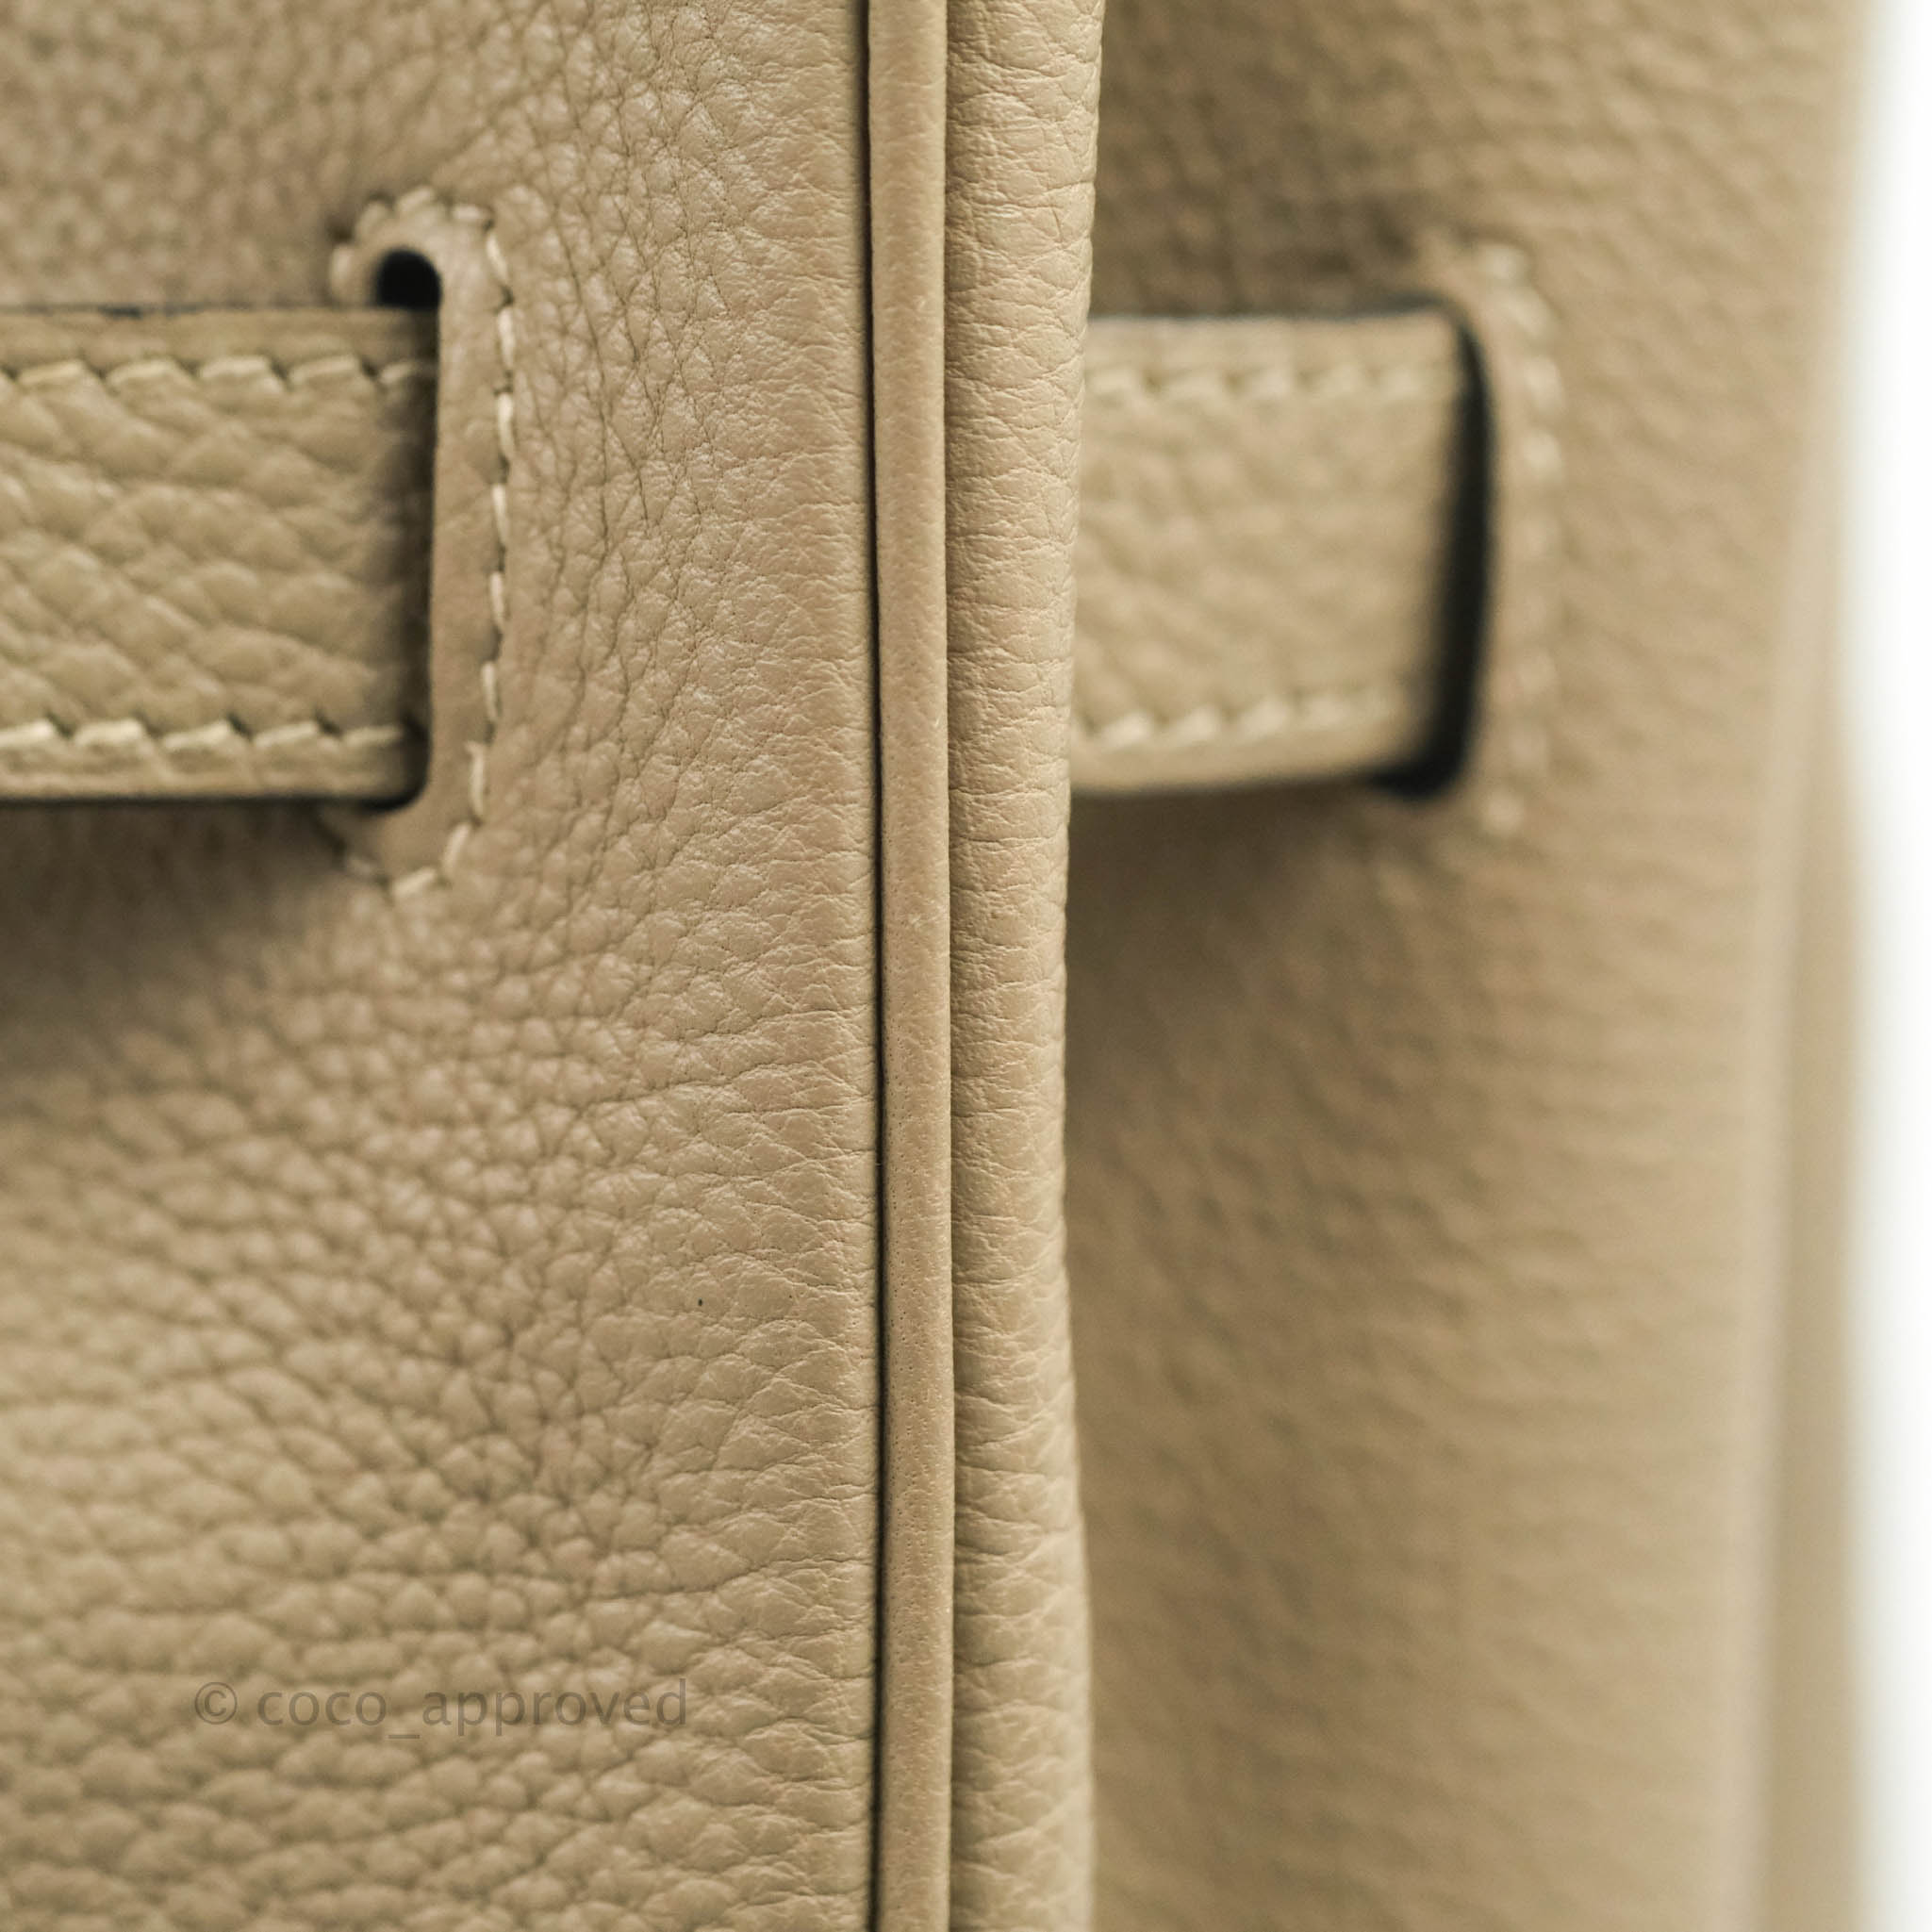 Hermès Gris Tourterelle Birkin 35cm with Palladium Hardware, Handbags and  Accessories Online, Ecommerce Retail